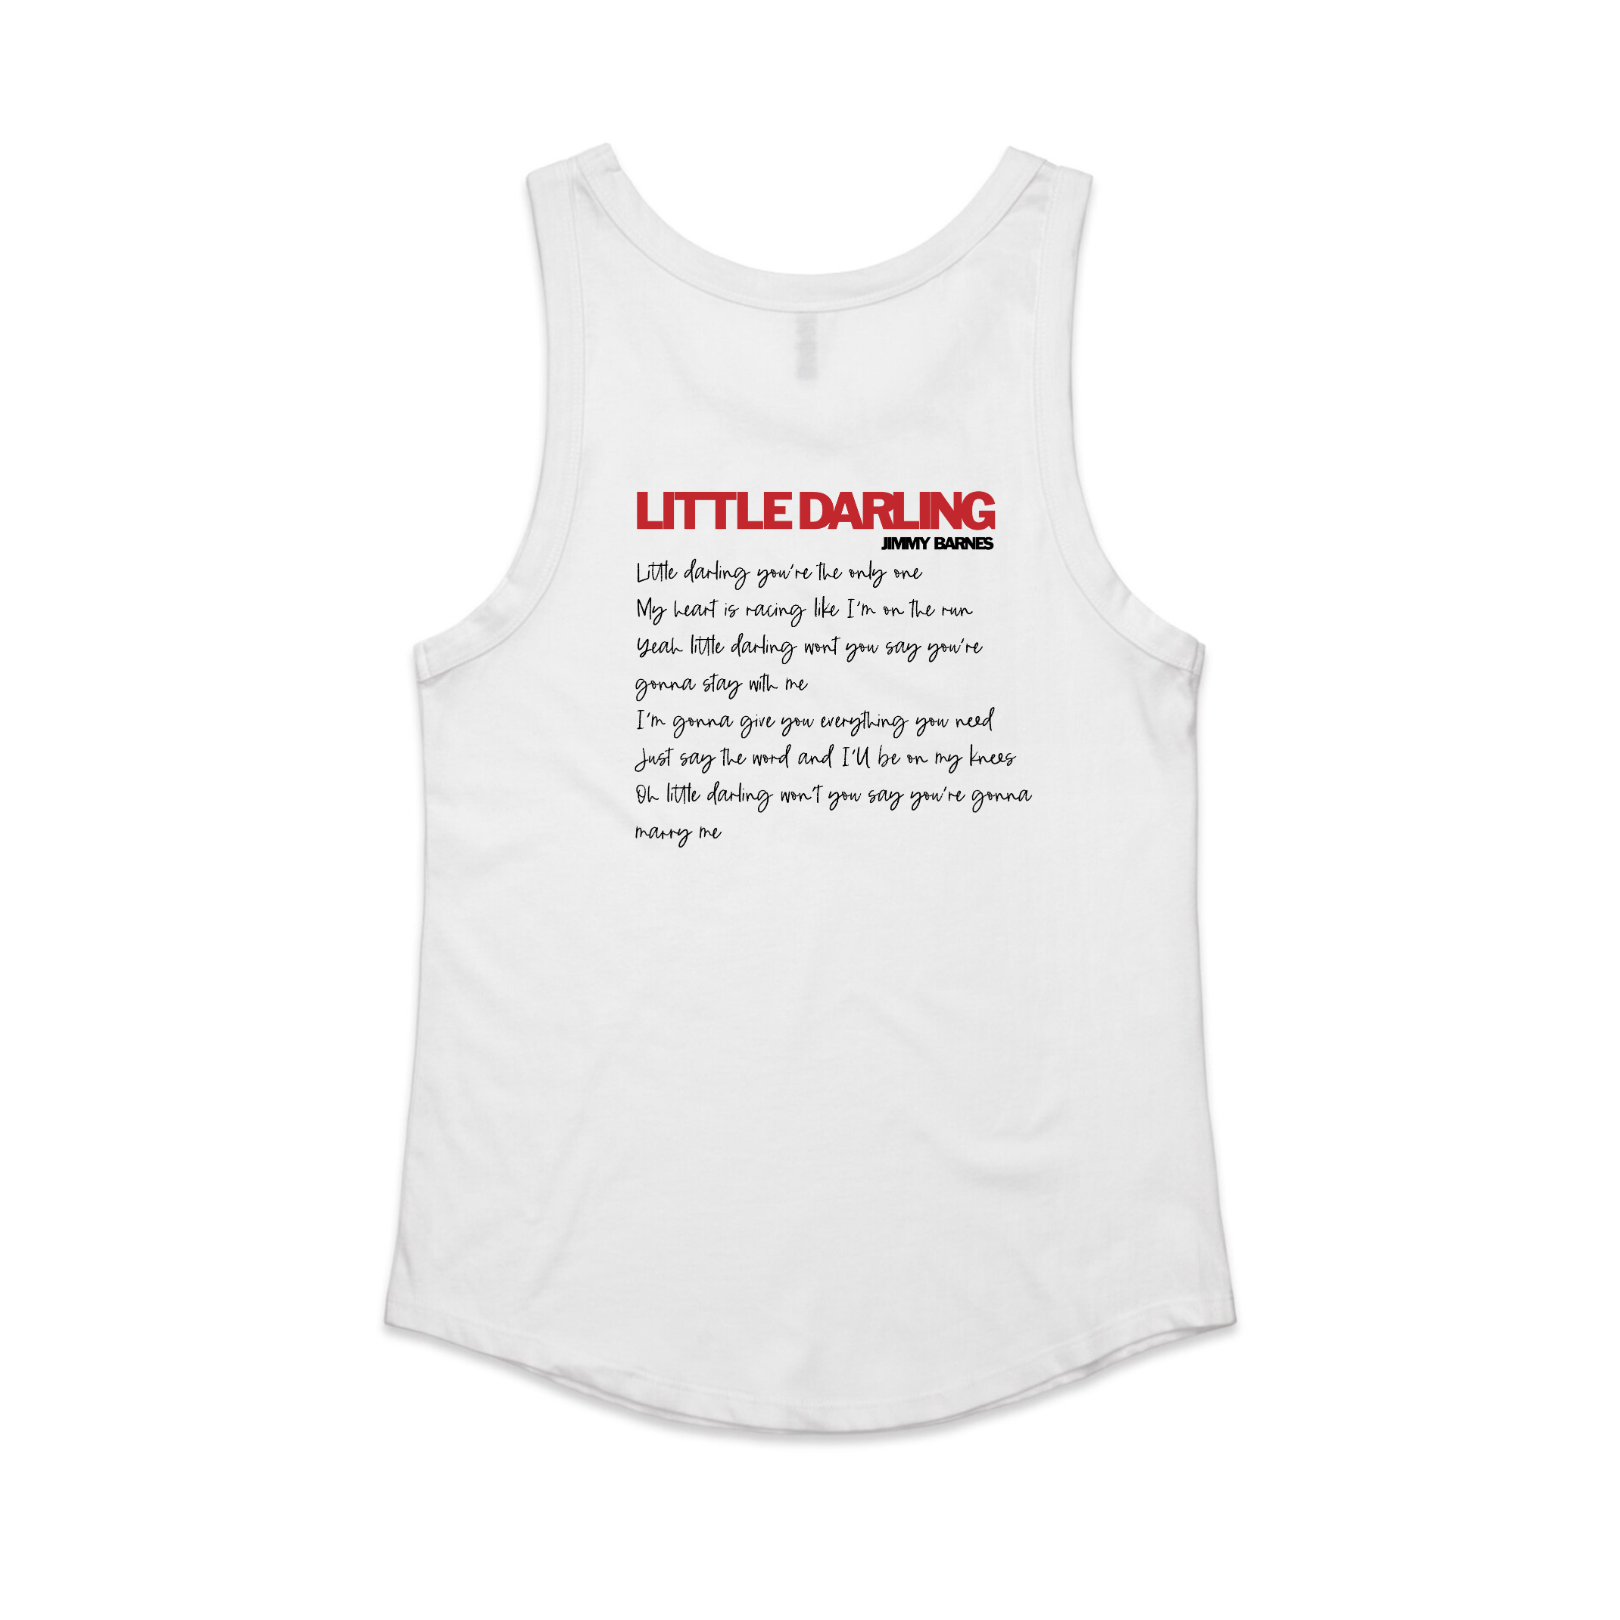 Little Darling | Jimmy Barnes | Womens Singlet